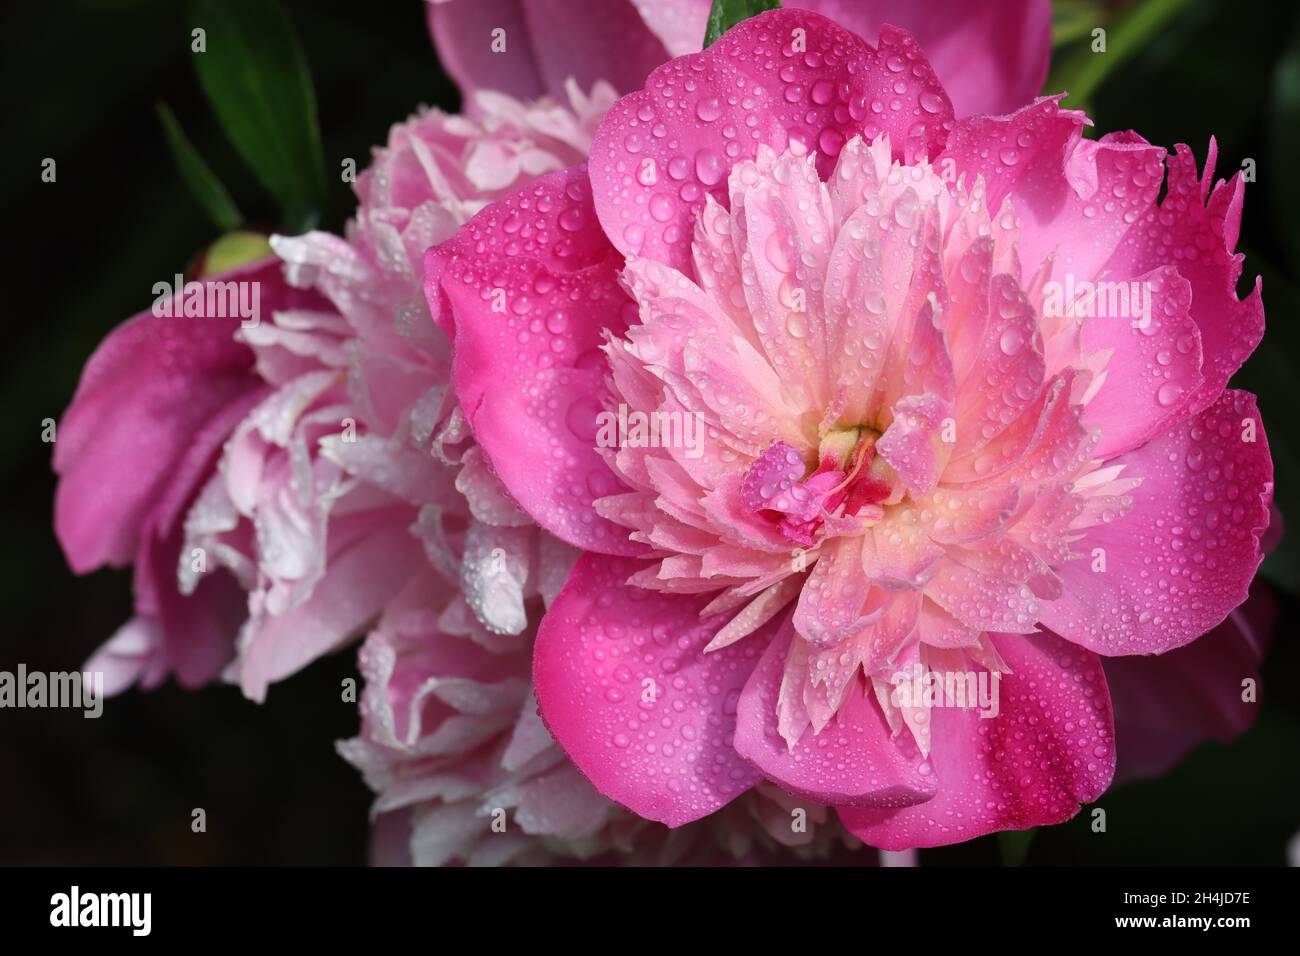 primer plano de una delicada flor de peonías rosadas sembradas con muchas gotitas sobre un fondo oscuro y borroso Foto de stock